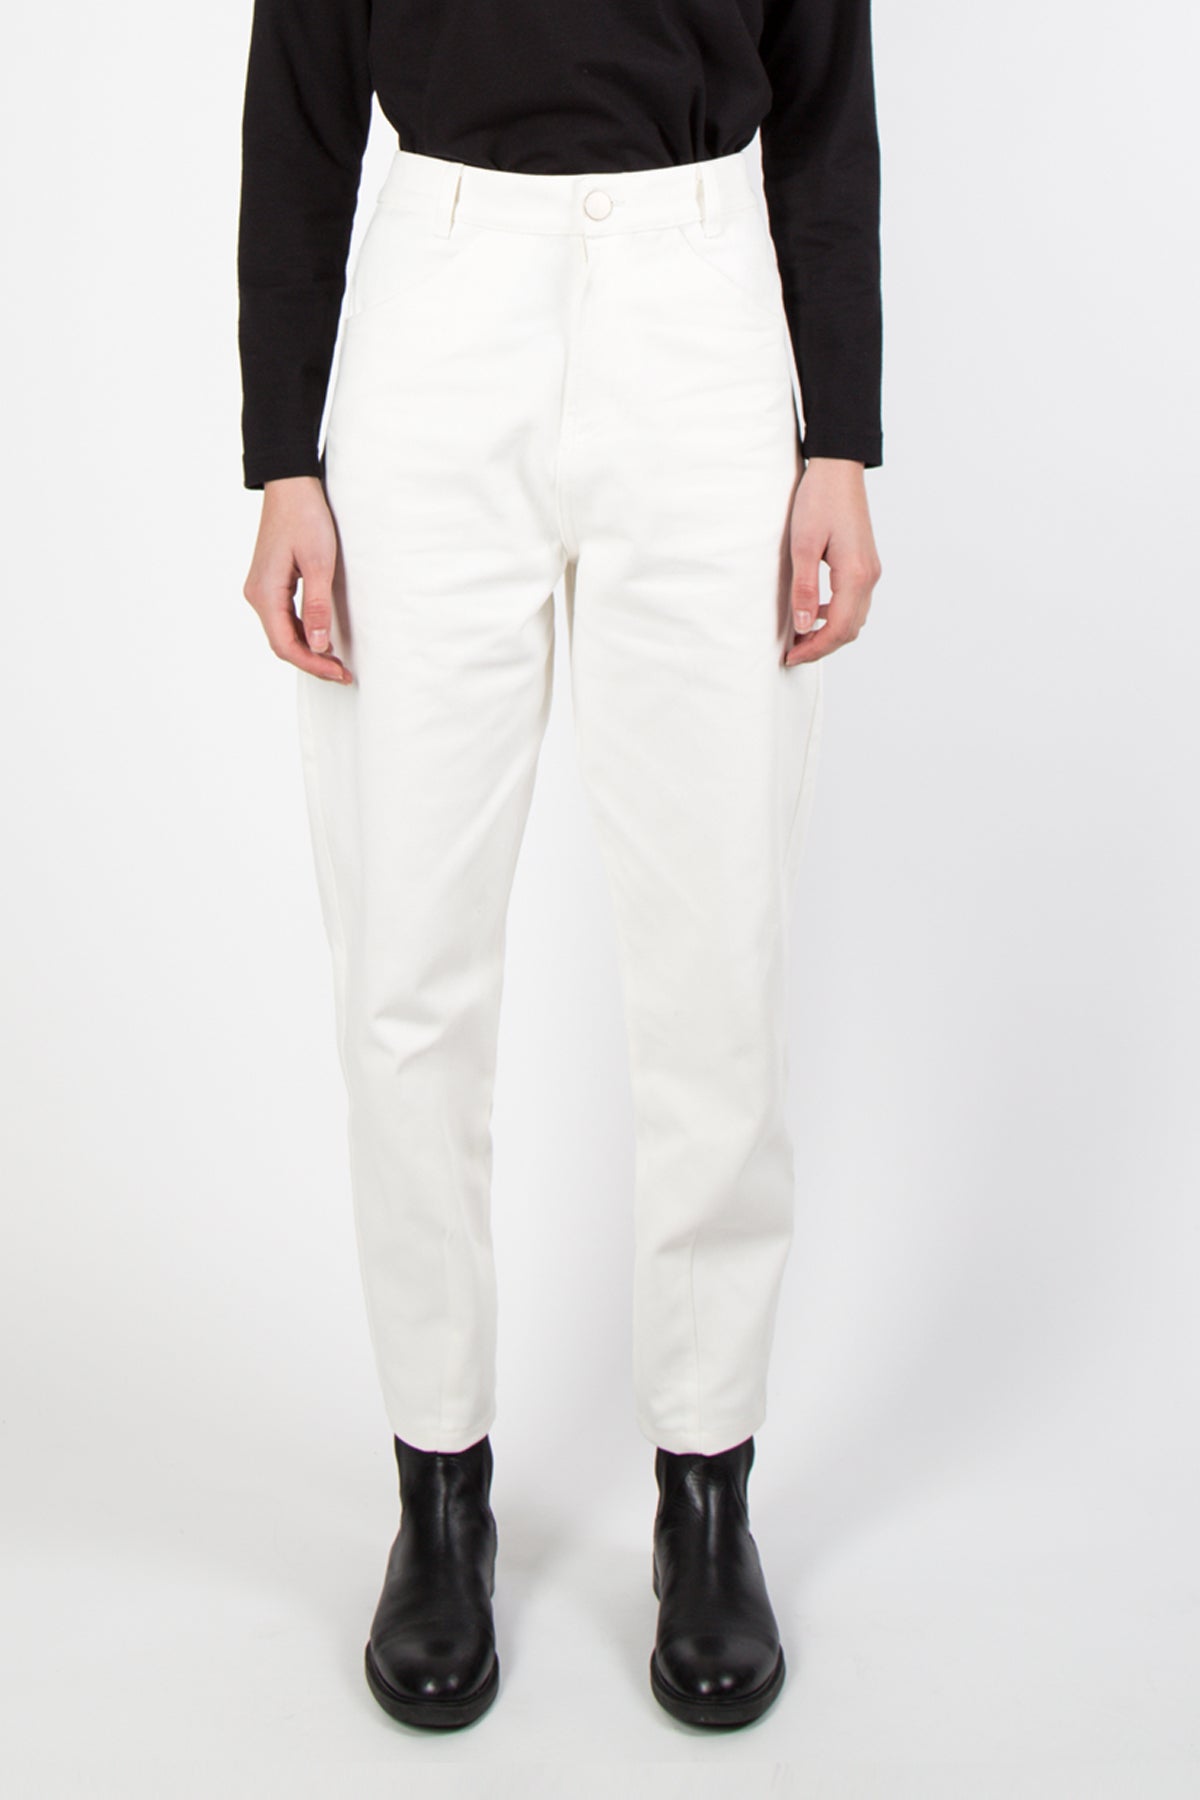 Alva Jeans - white